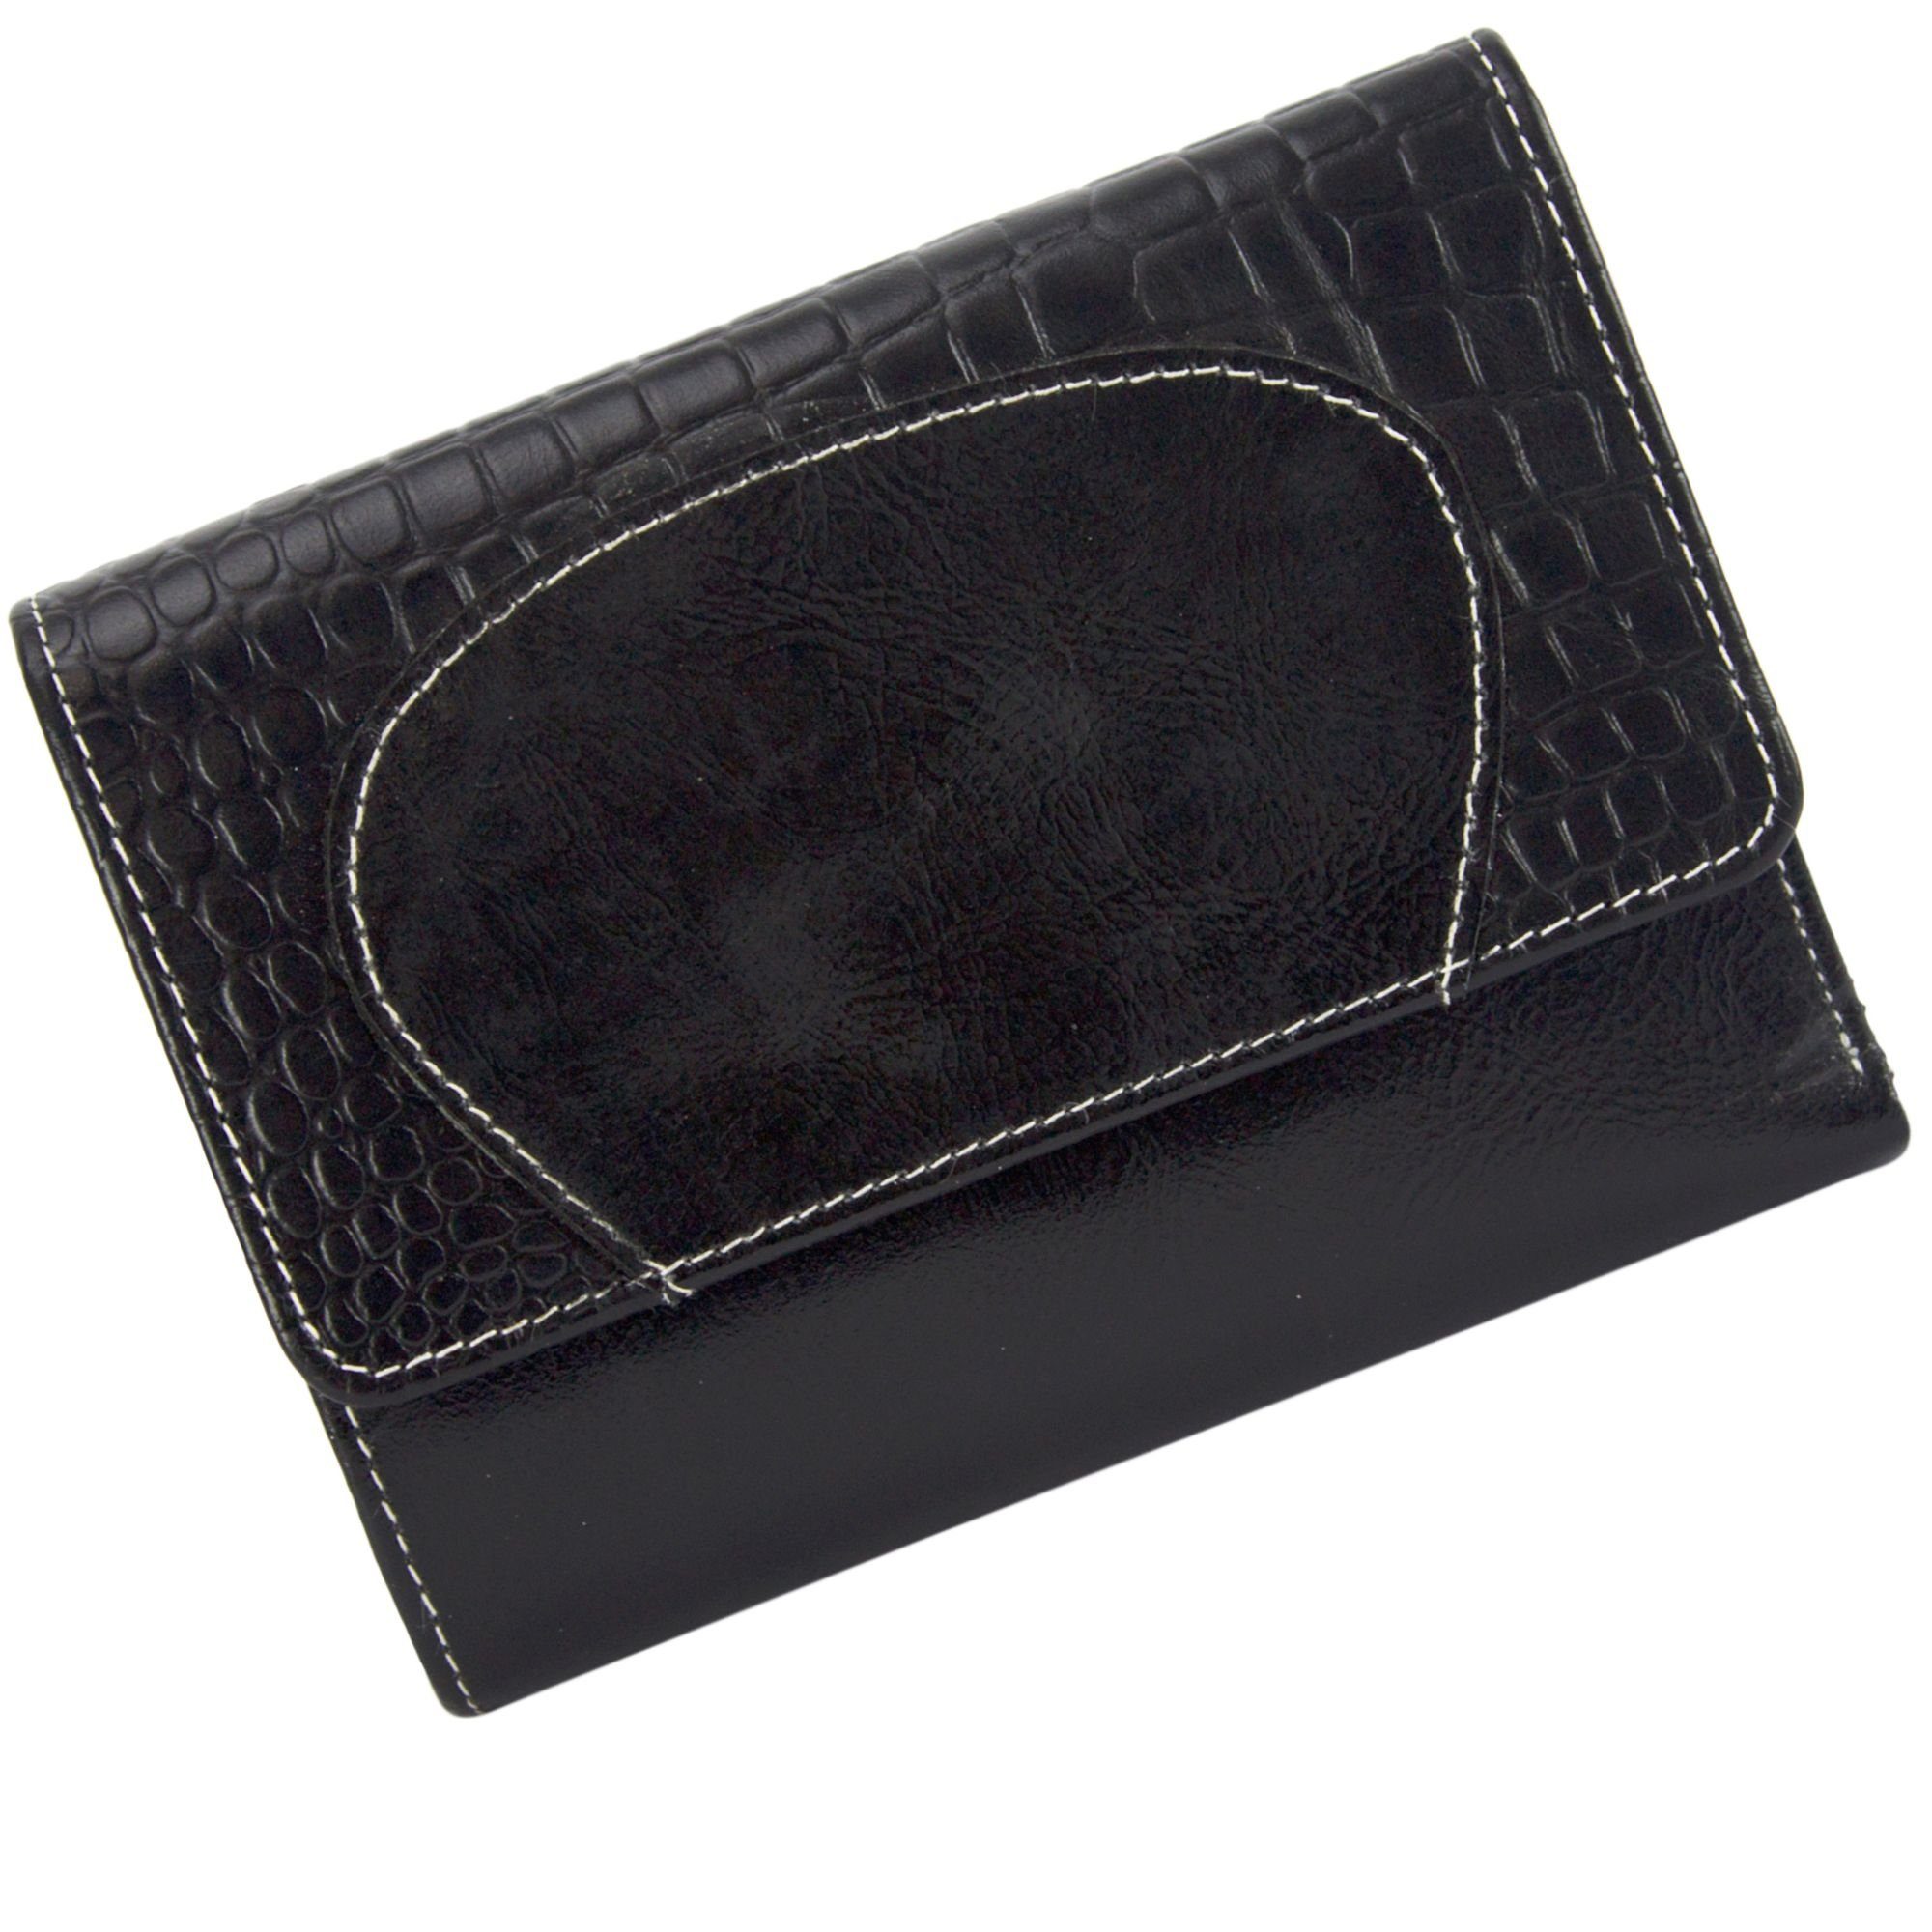 Sunsa Geldbörse echt Leder Geldbörse Damen Geldbeutel Portemonnaie große Brieftasche, echt Leder, aus recycelten Lederresten, mit RFID-Schutz, Unisex schwarz